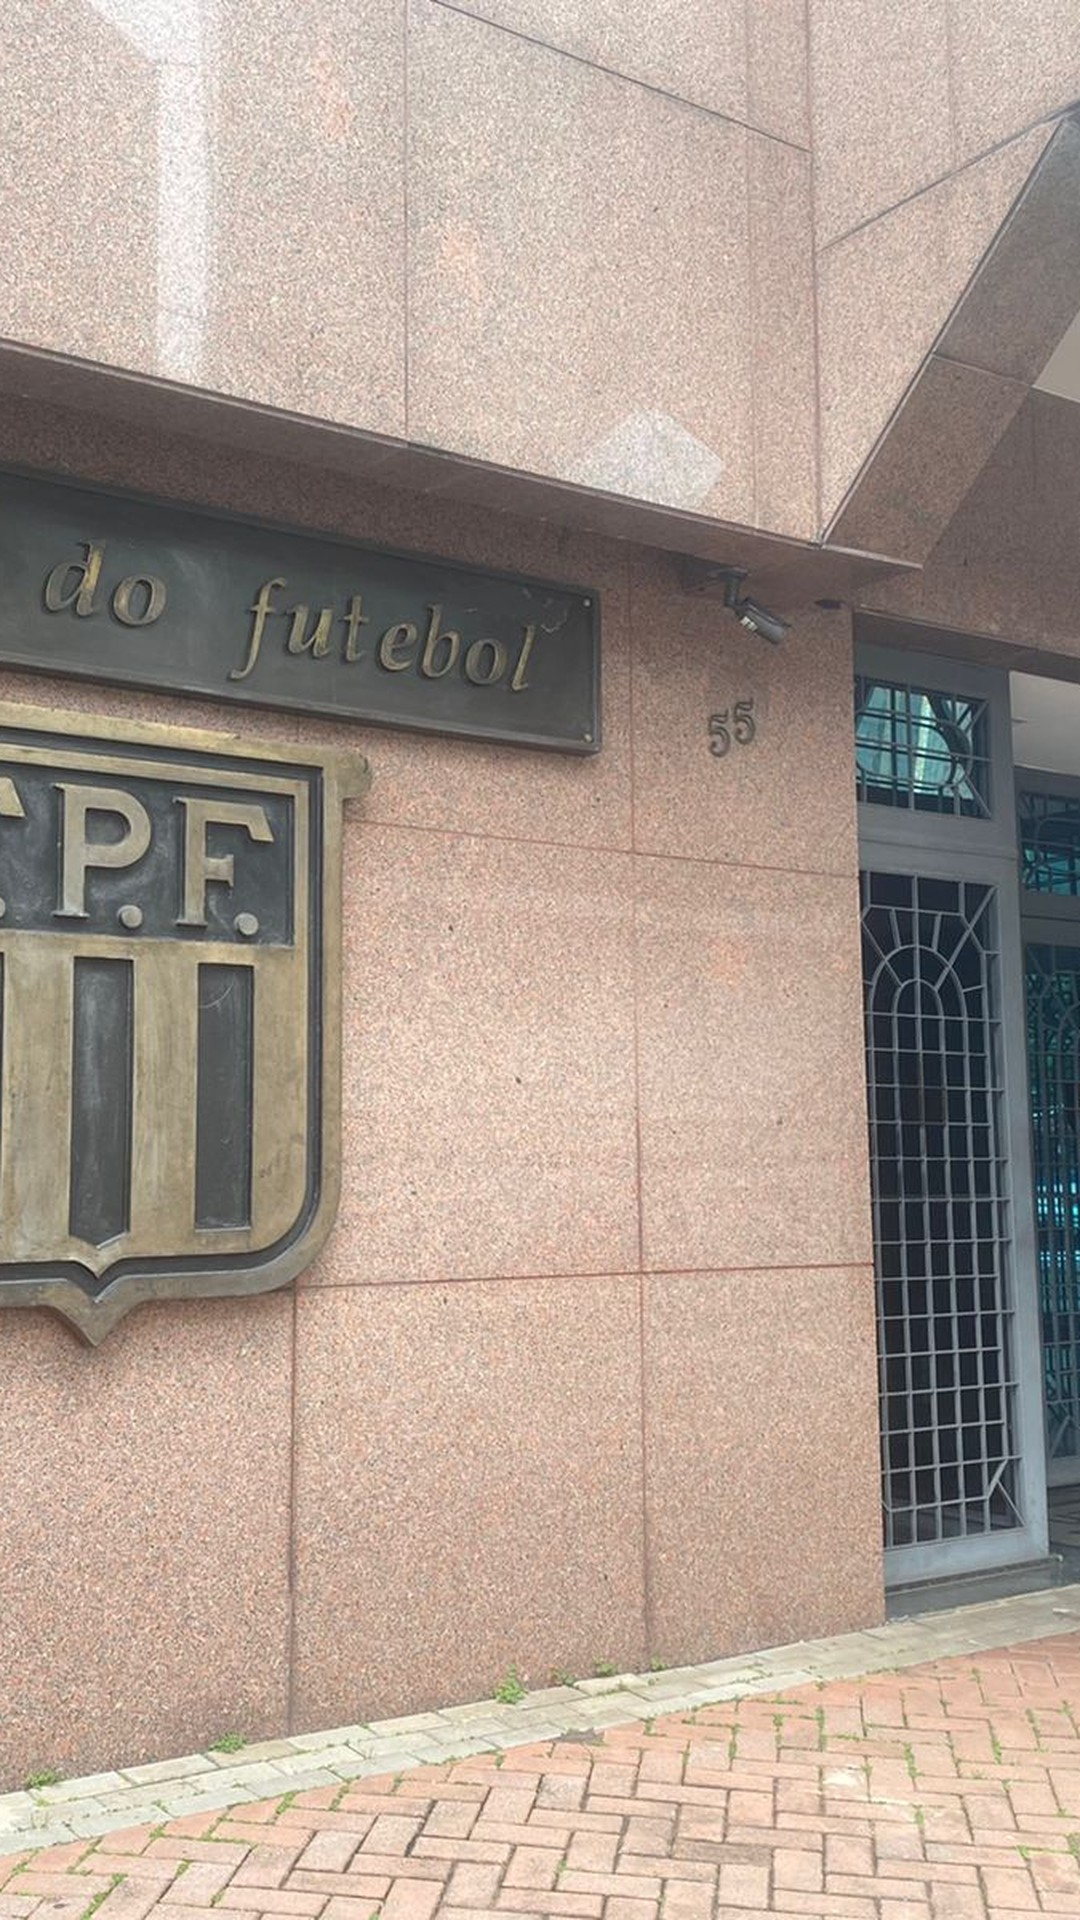 Copa Paulista 2023 tem tabela detlhada divulgada pela FPF